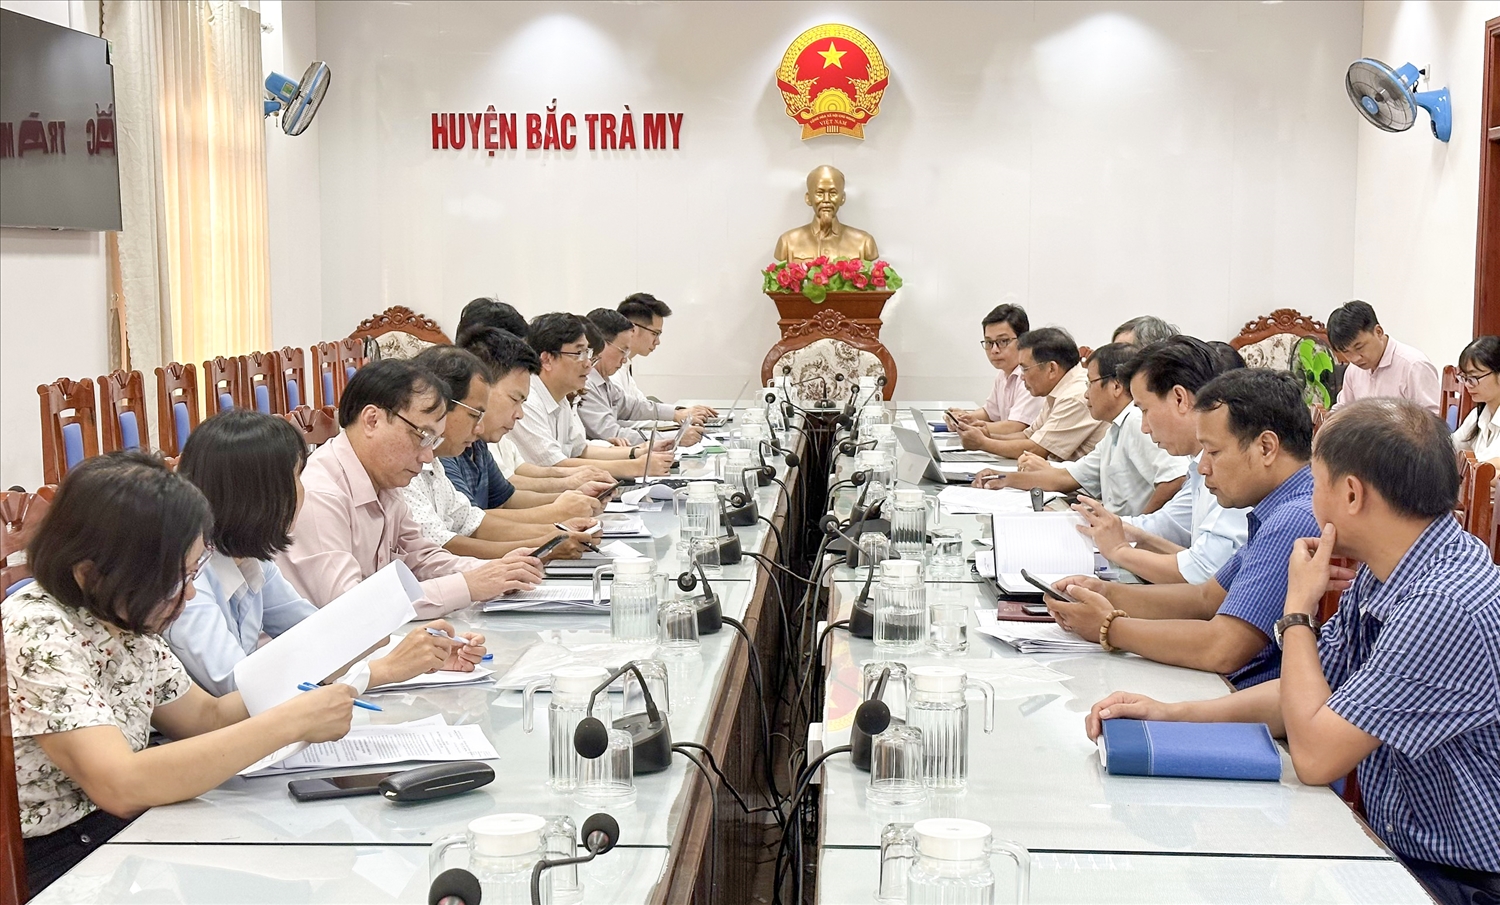 Thừa ủy quyền của lãnh đạo Ủy ban Dân tộc, Đoàn công tác của Uỷ ban Dân tộc và các bộ ngành do lãnh đạo Văn phòng Chương trình MTQG 1719 làm trưởng đoàn làm việc, tháo gỡ vướng mắc thực hiện Chương trình MTQG 1719 tại huyện Bắc Trà My, tỉnh Quảng Nam (tháng 4/2023)